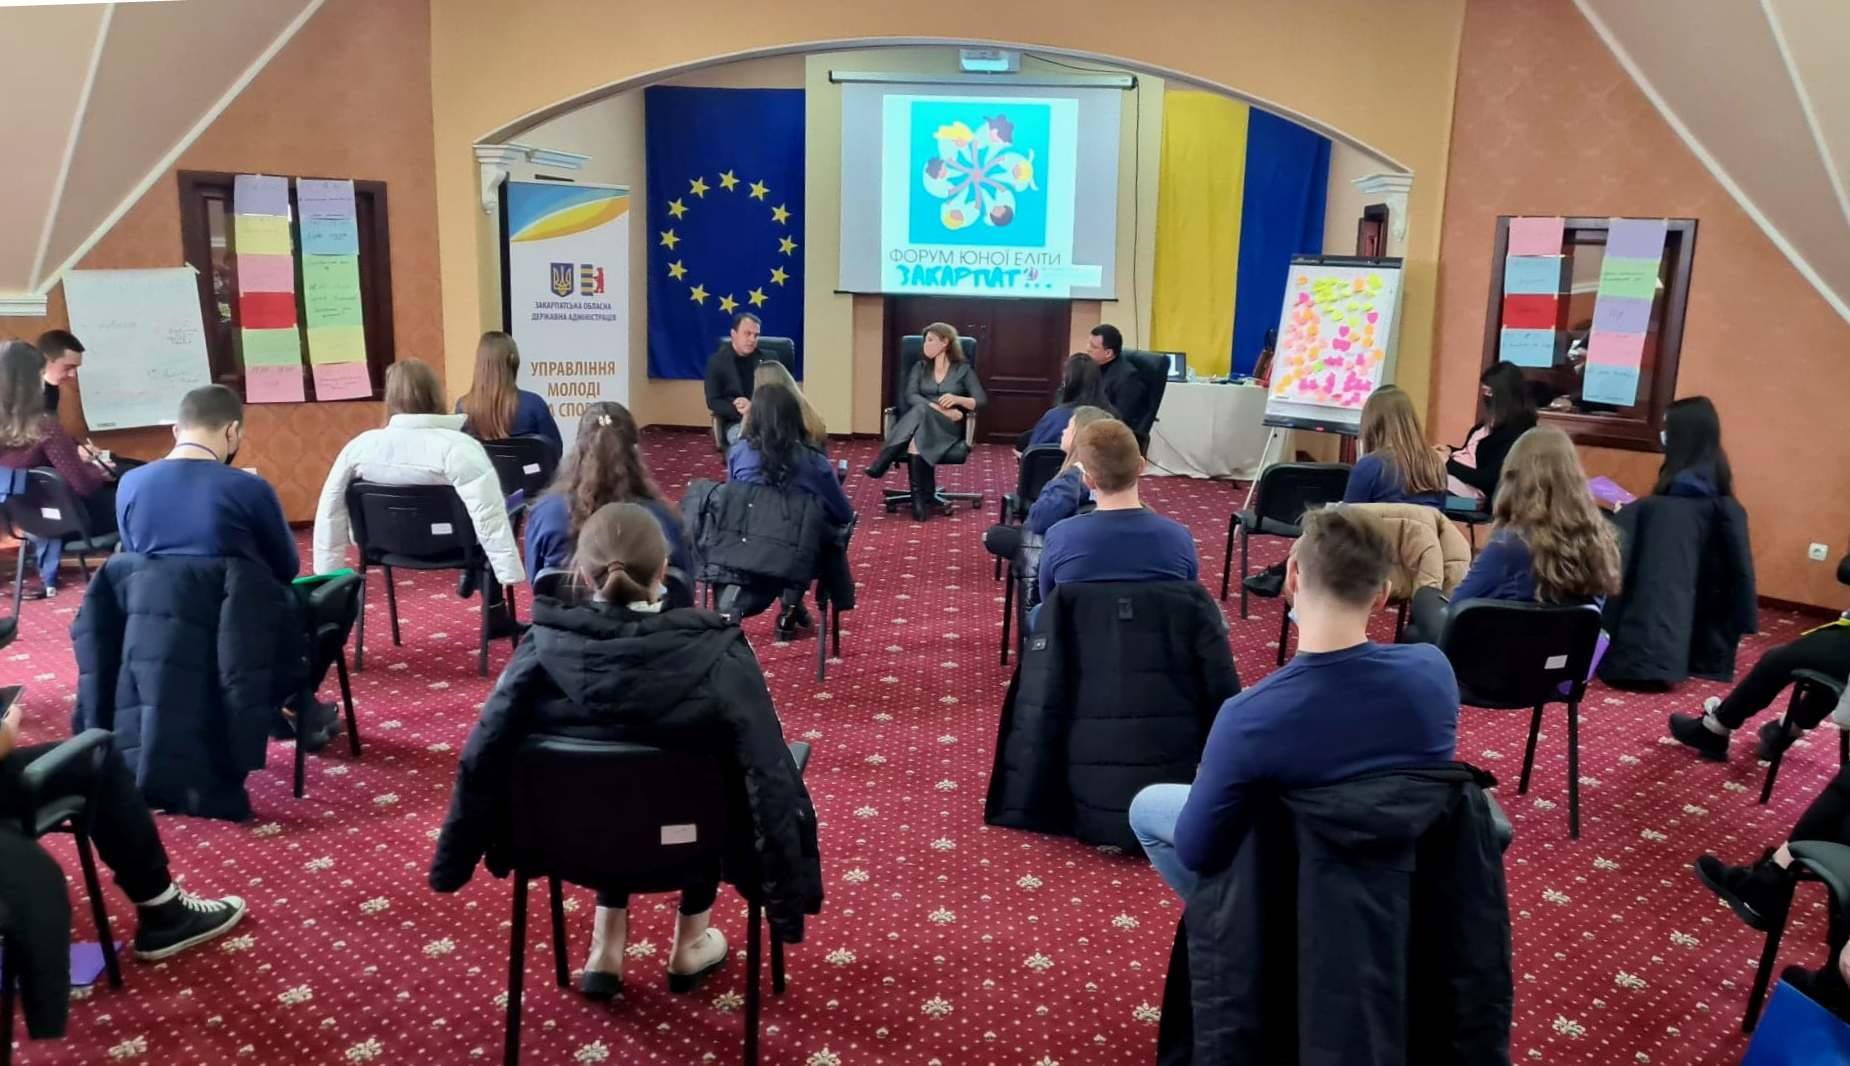 25 представителей студенческого самоуправления региона принимают участие в двухдневном Форуме молодой элиты Закарпатья, который стартовал 3 декабря в Ужгородской области.